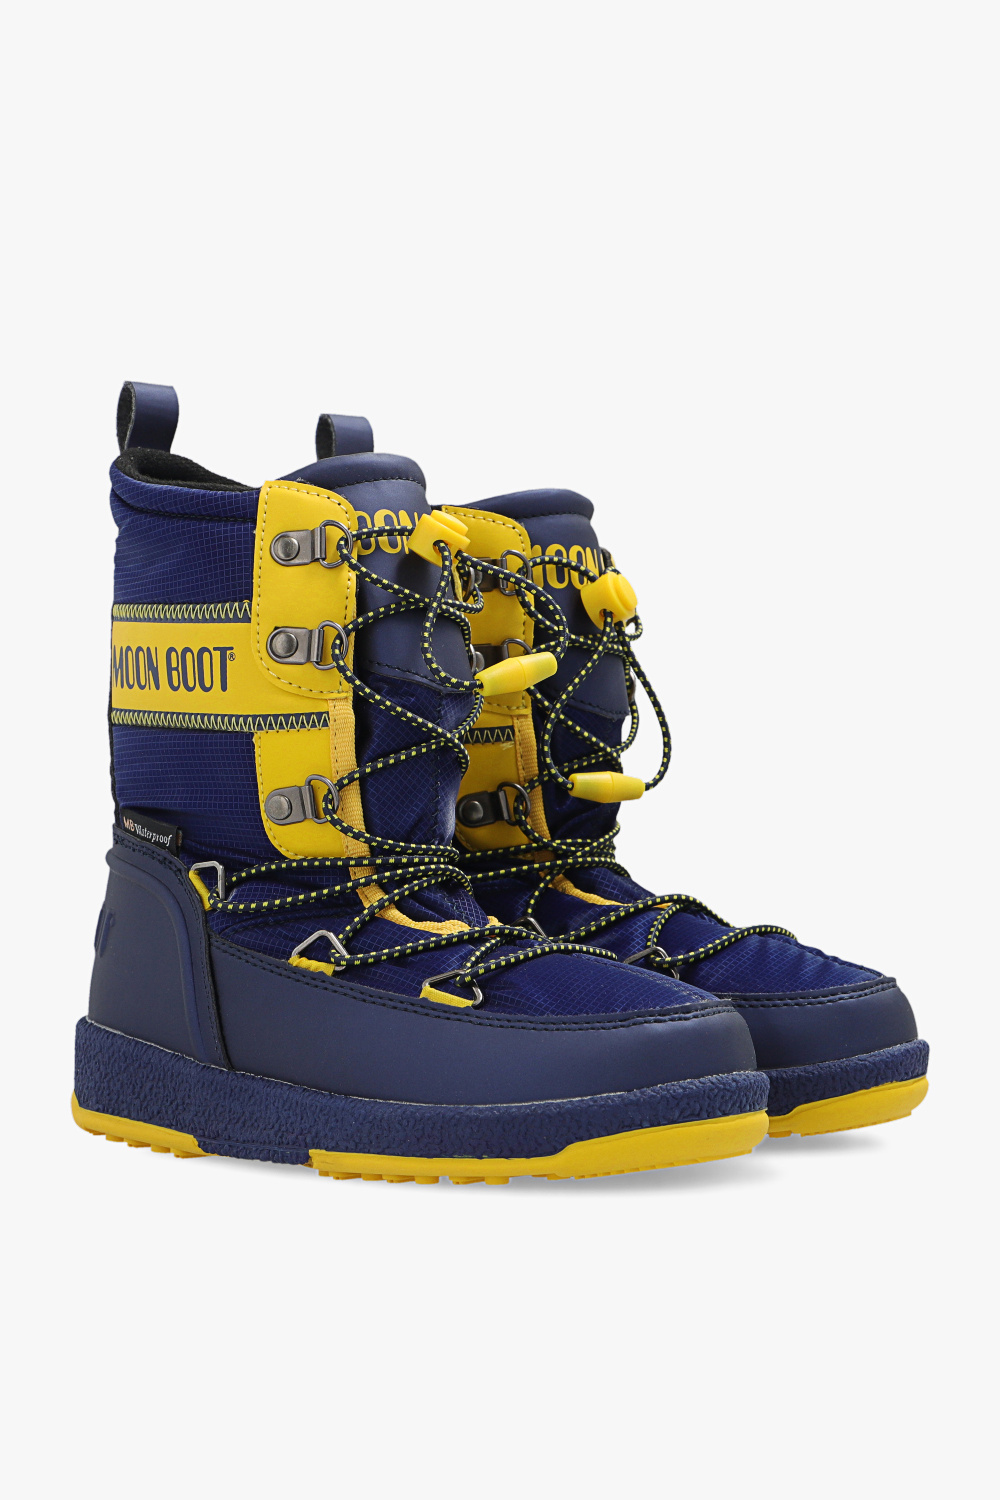 Moon Boot Kids ‘JR Boy’ snow boots